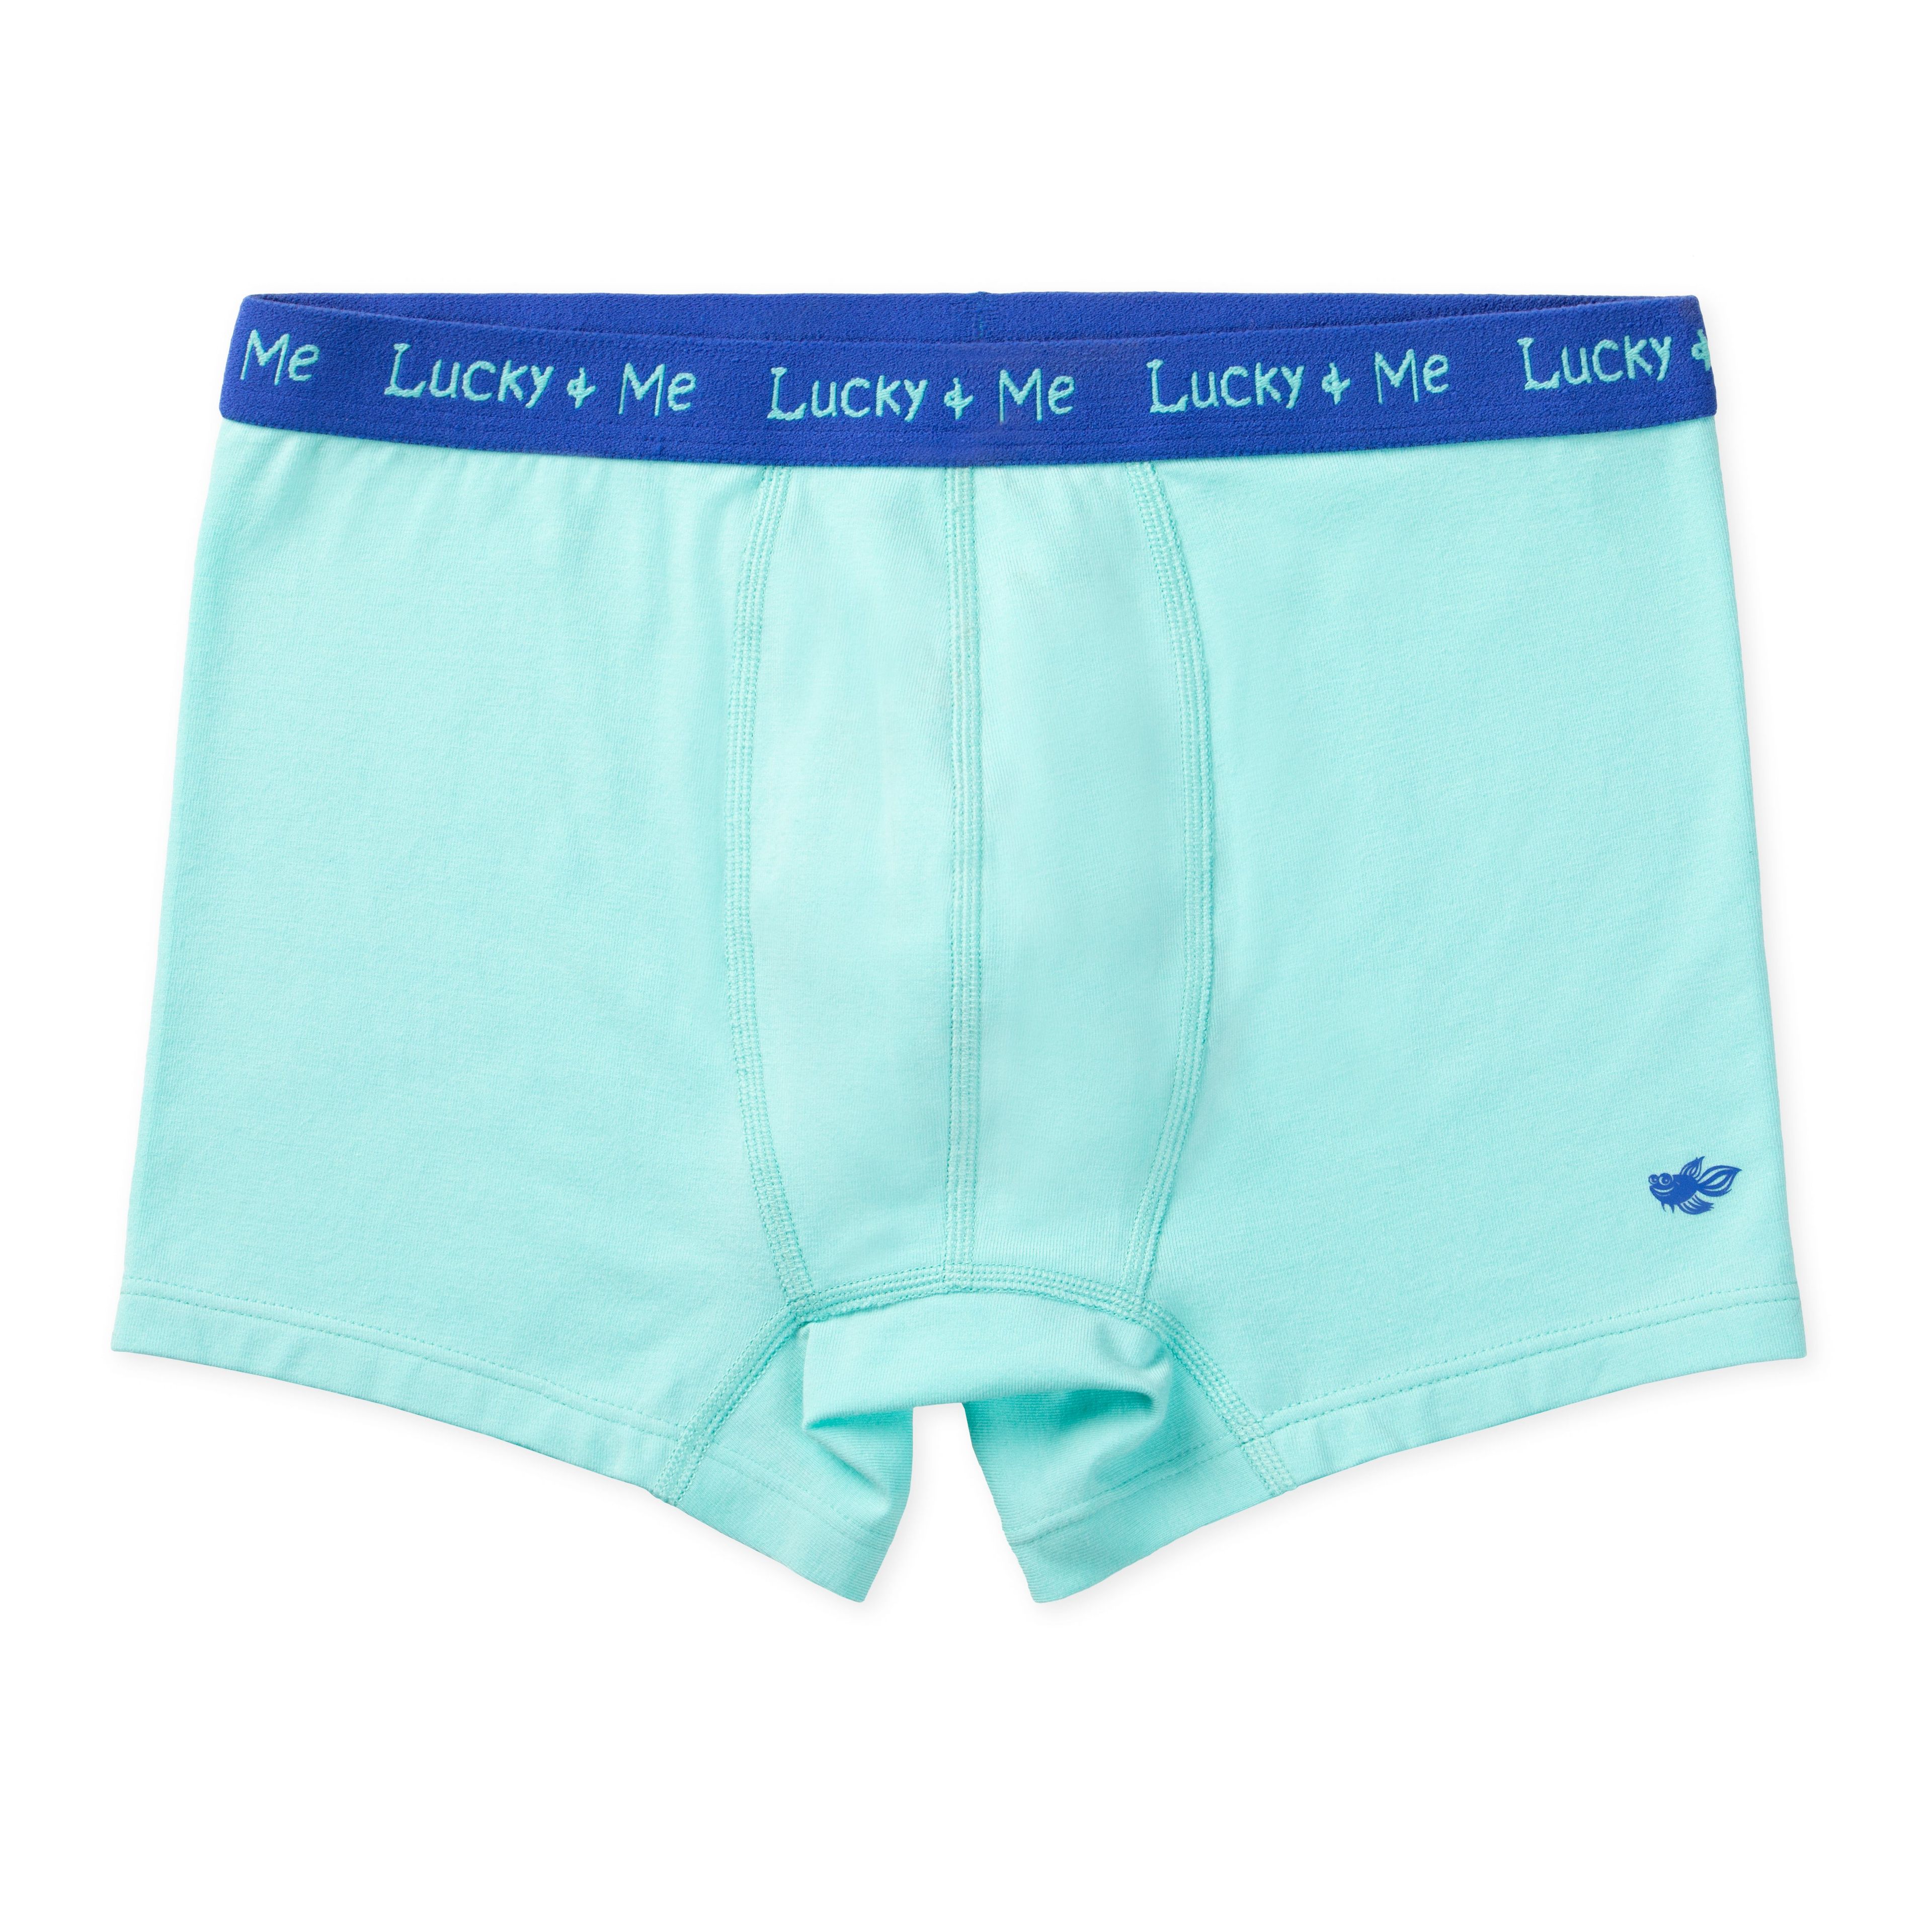 Lucky & Me, Liam Boys Boxer Briefs, Children's Tagless Soft Cotton  Underwear